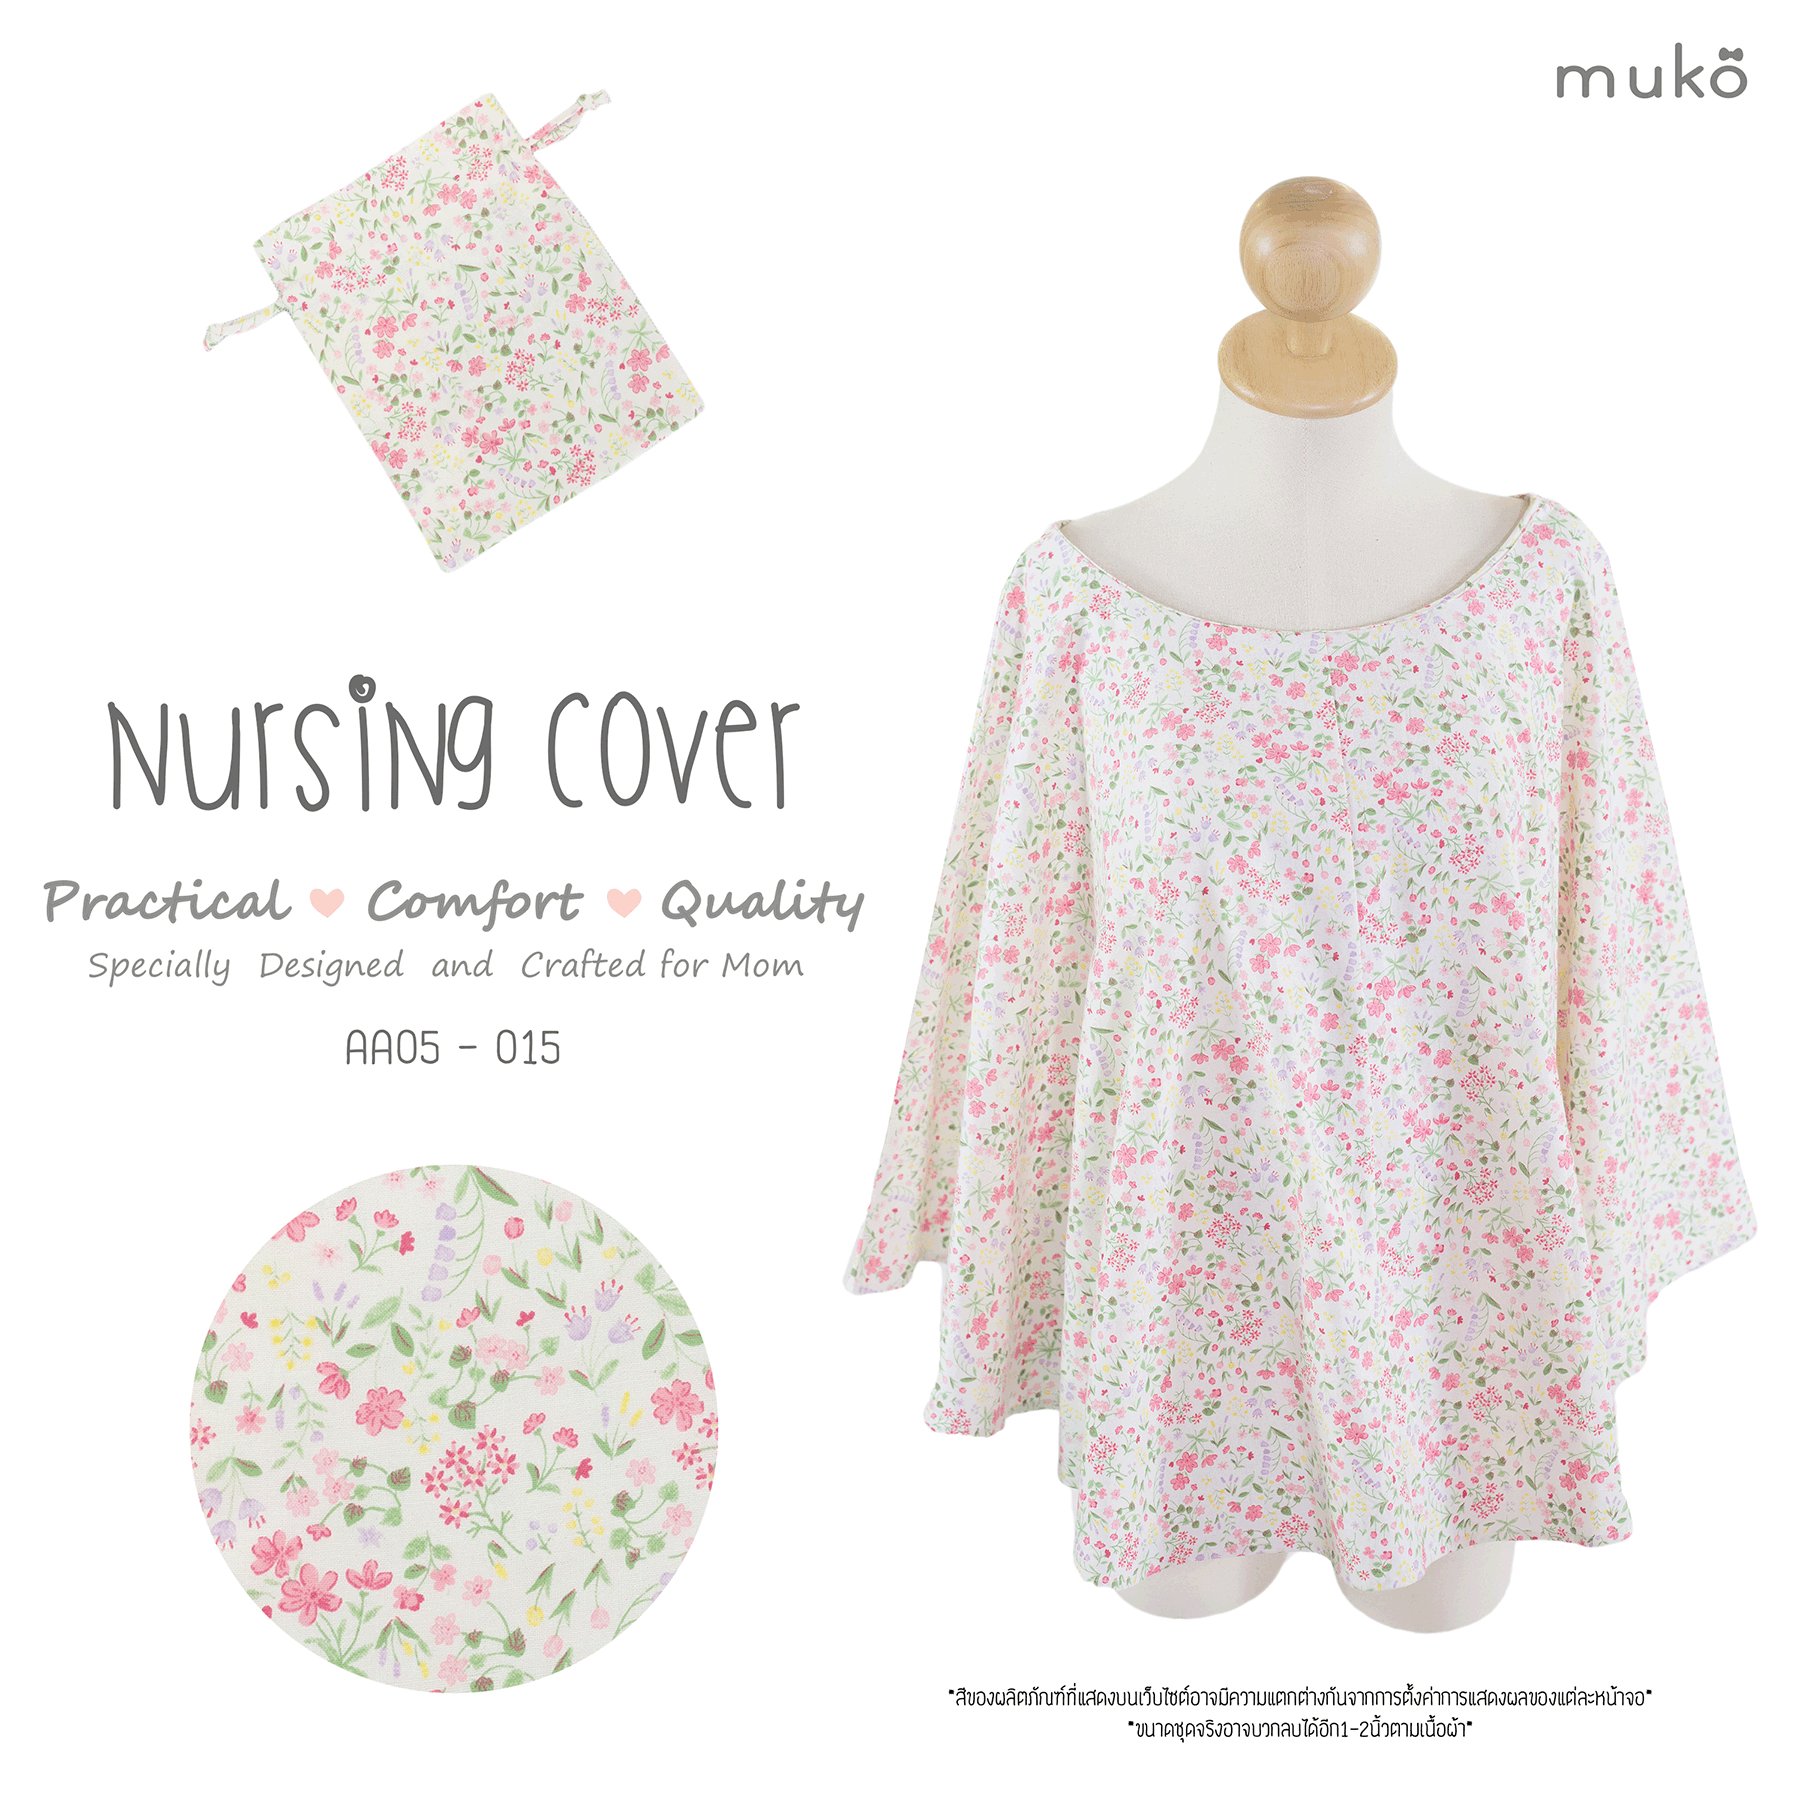 Muko Nursing Cover ผ้าคลุมให้นมลูก AA05-015 ขาวดอกชมพู